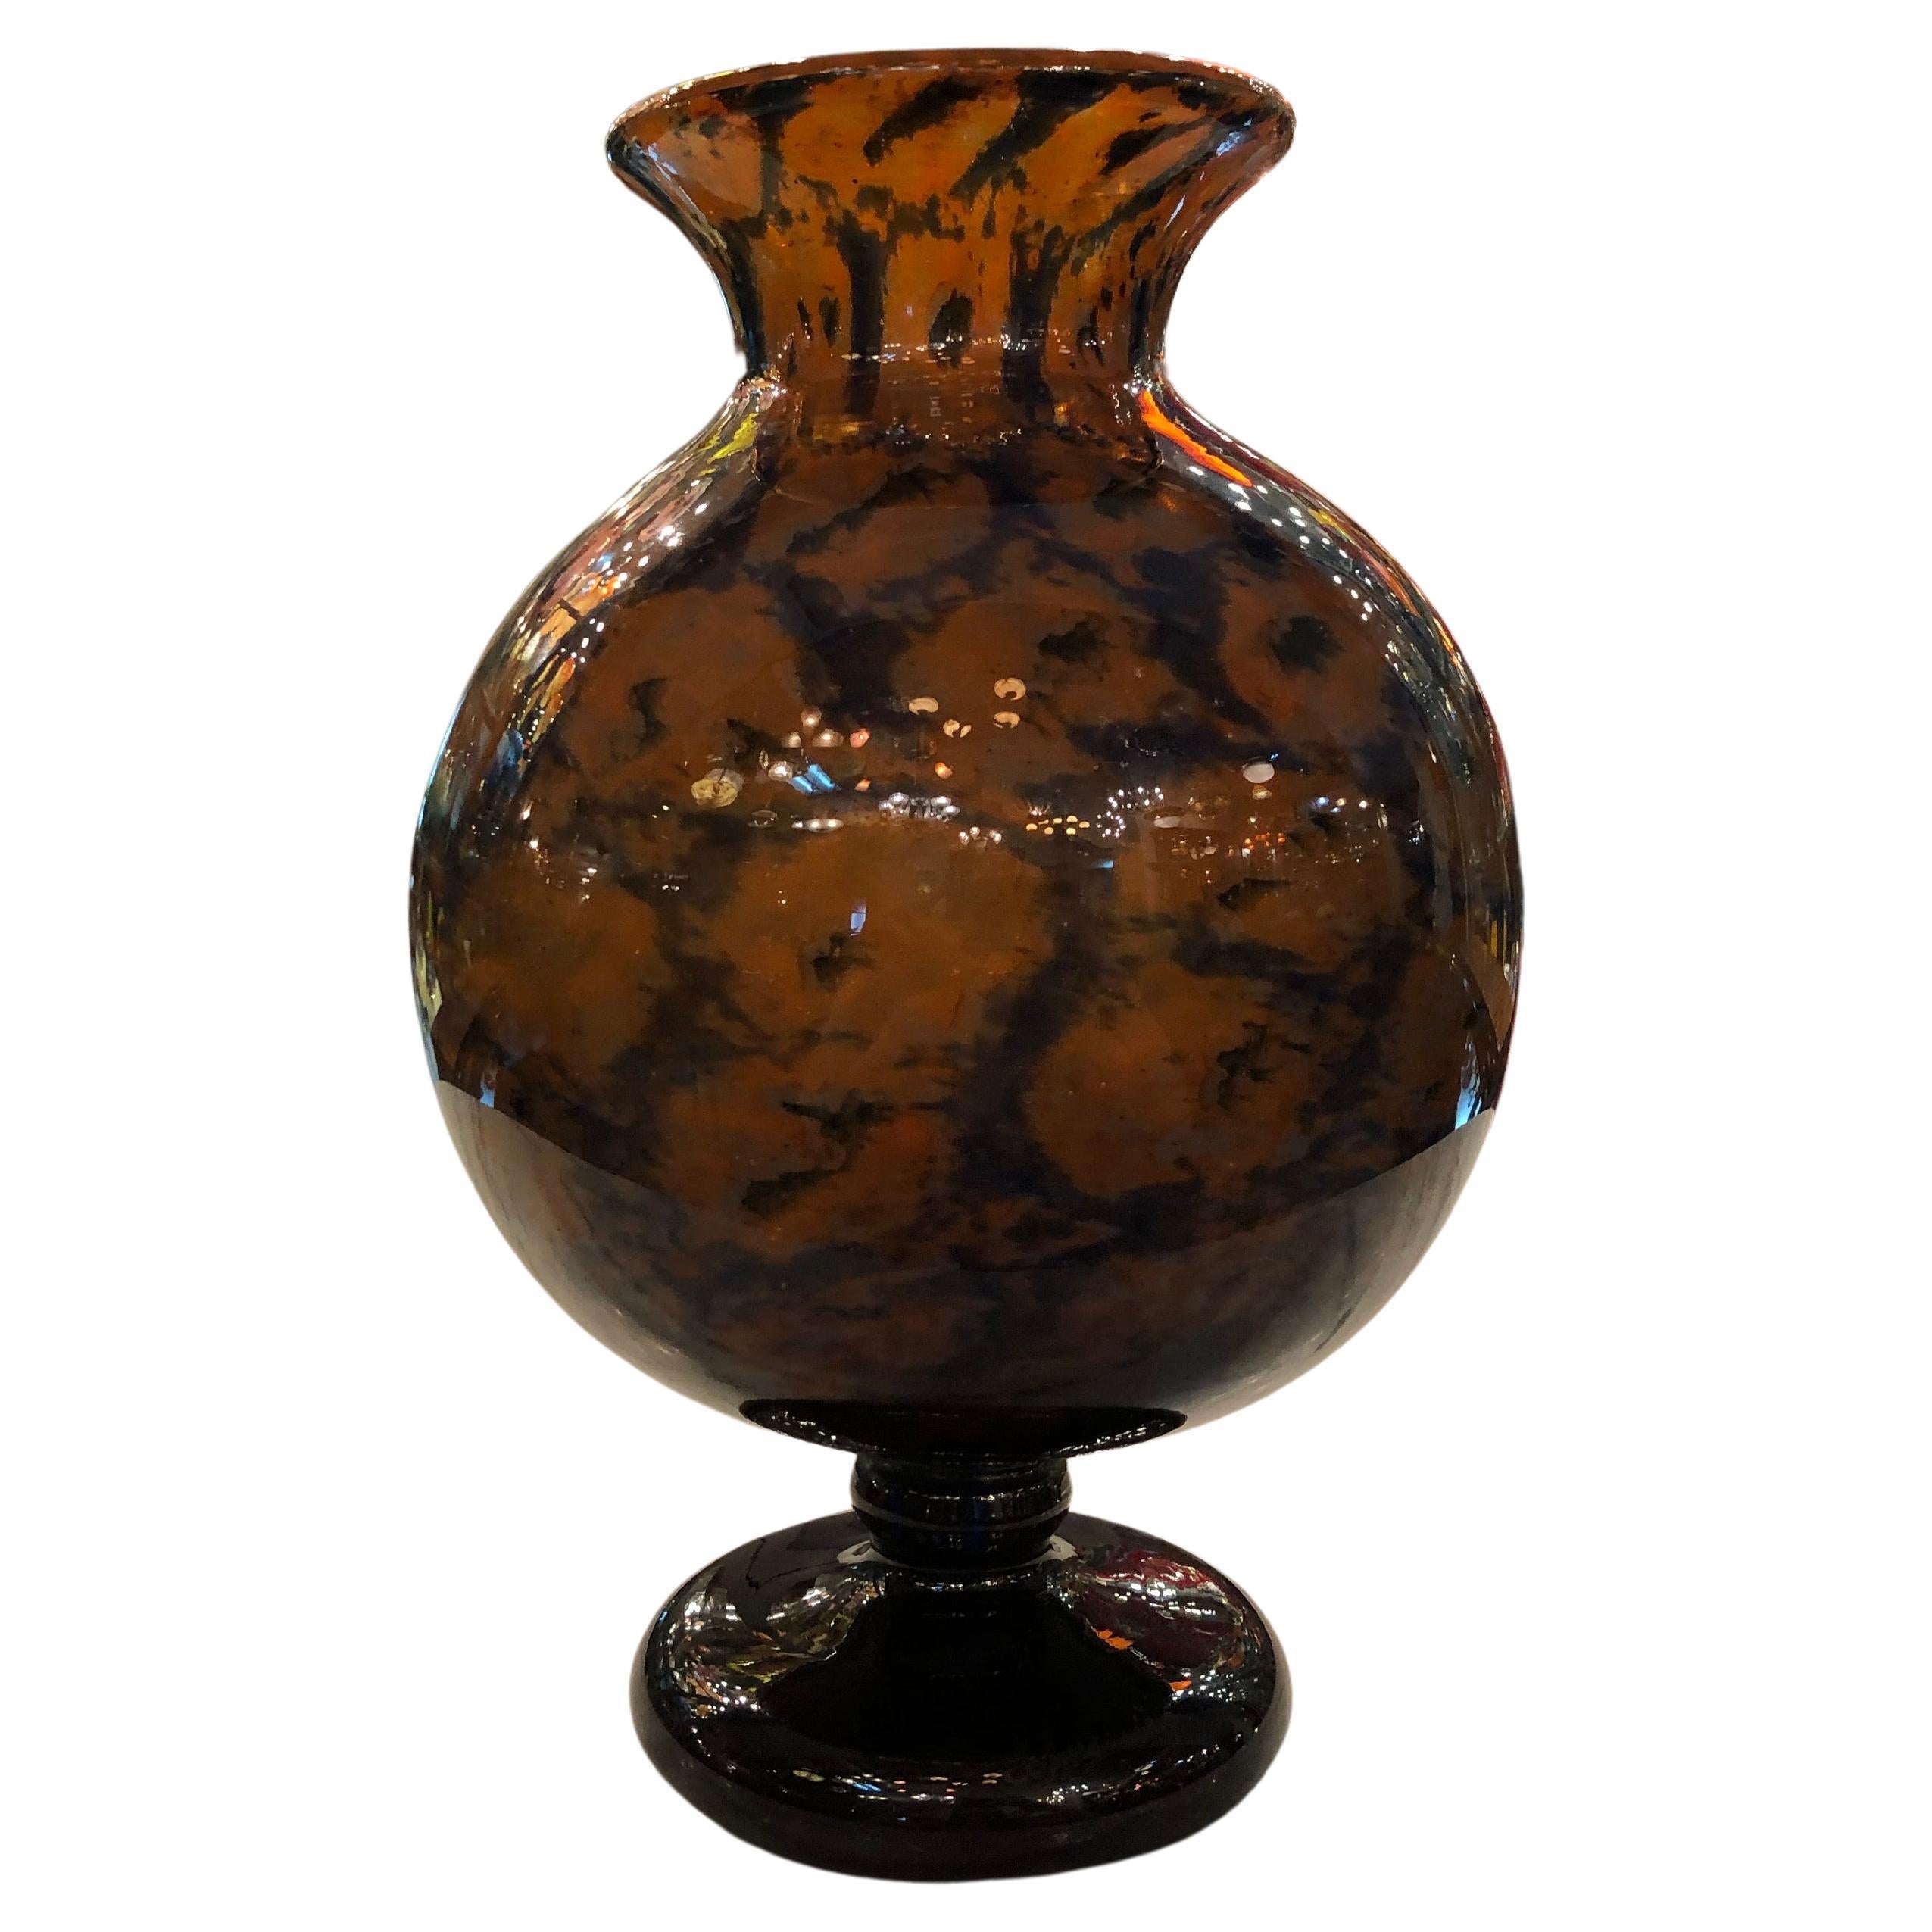 Signature du vase : Schneider France, avec application, 1922, Style : Art déco